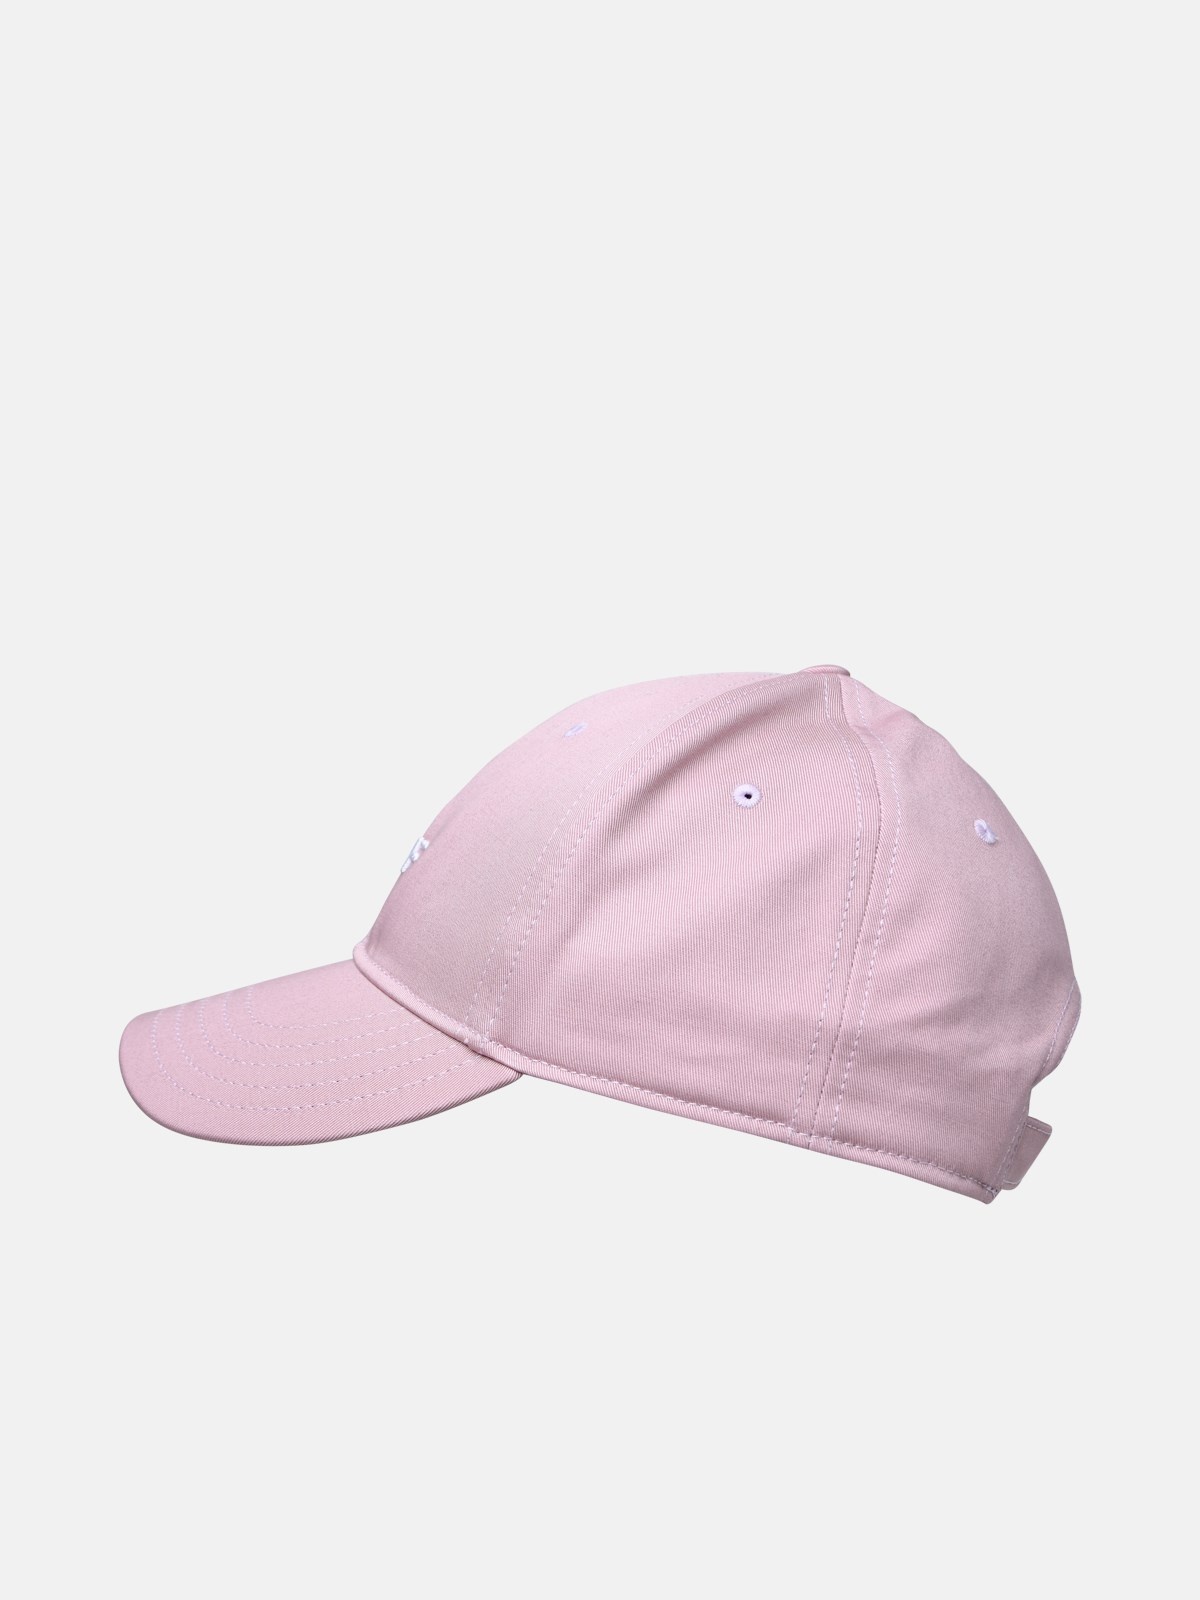 PINK COTTON HAT - 2